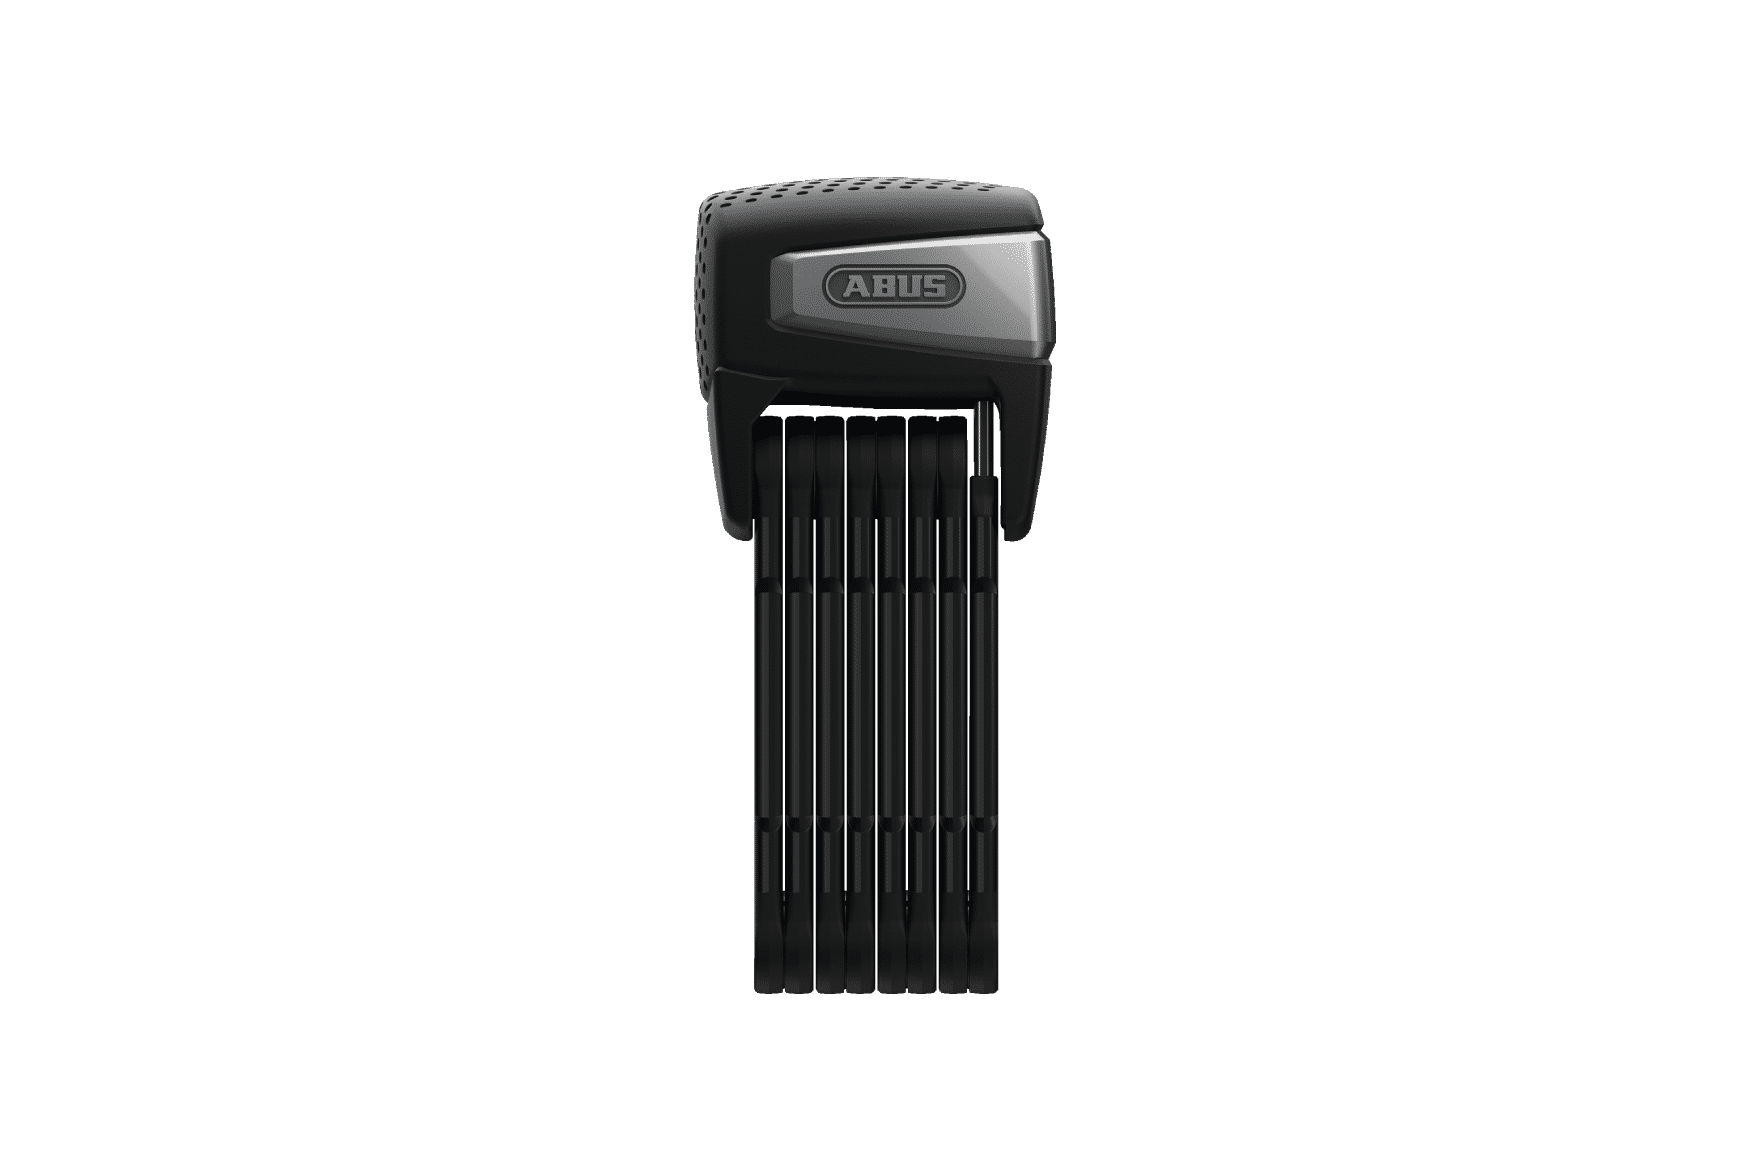 FISHTEC Antivol Velo a Empreinte Digitale sans Cle - Verrouillage  Deverrouillage avec Le Doigt - 20 Empreintes - Rechargeable USB - IP 66 -  107 CM